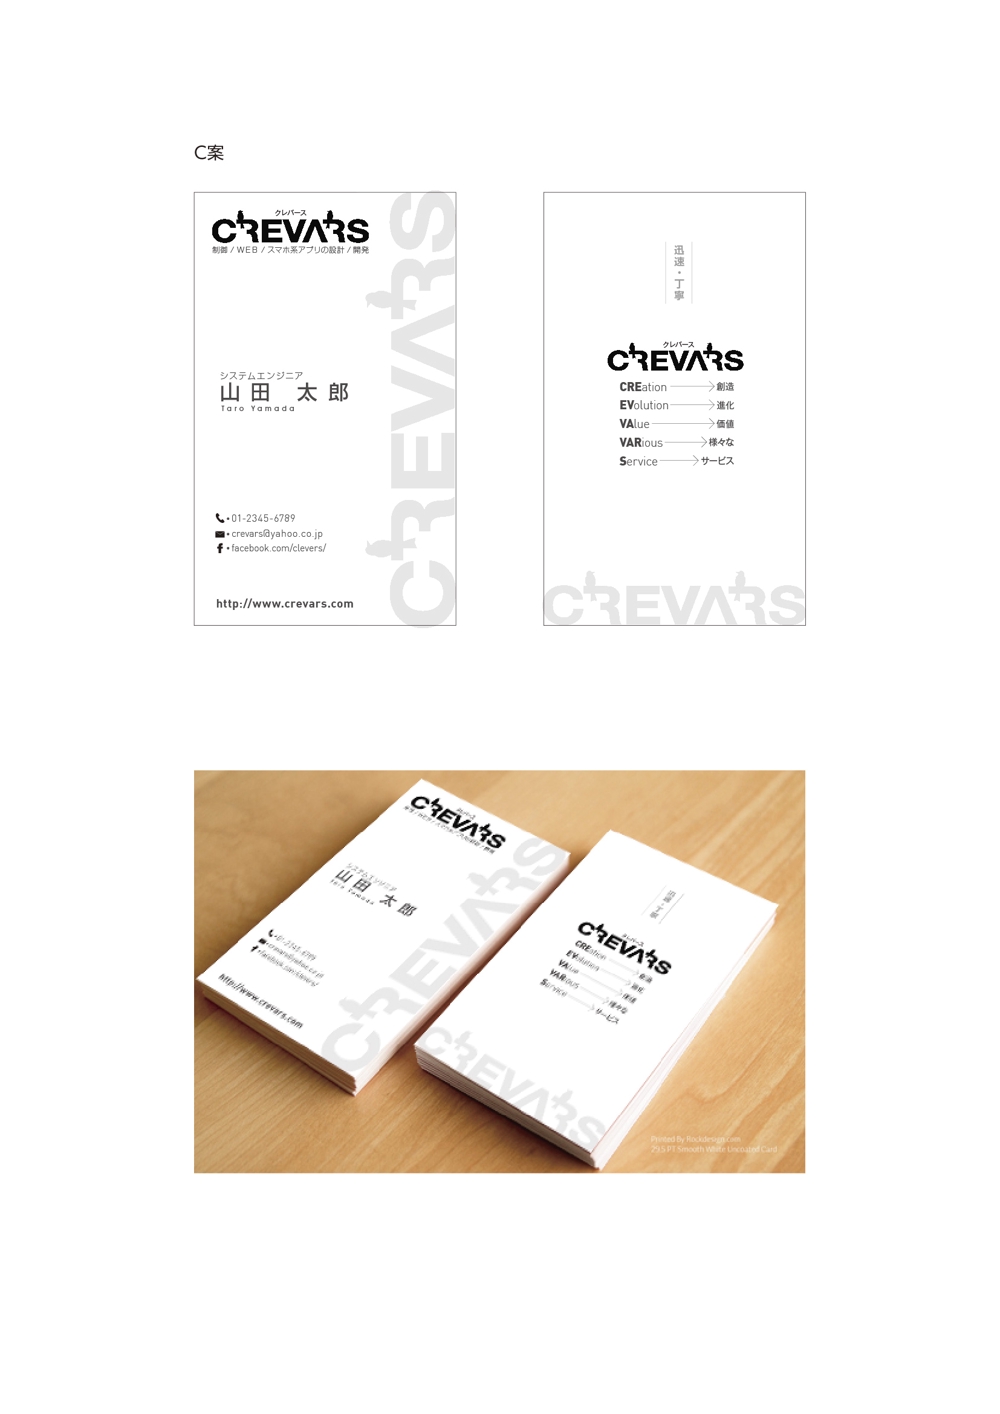 フリーランス システムエンジニア「CREVARS」の名刺デザイン